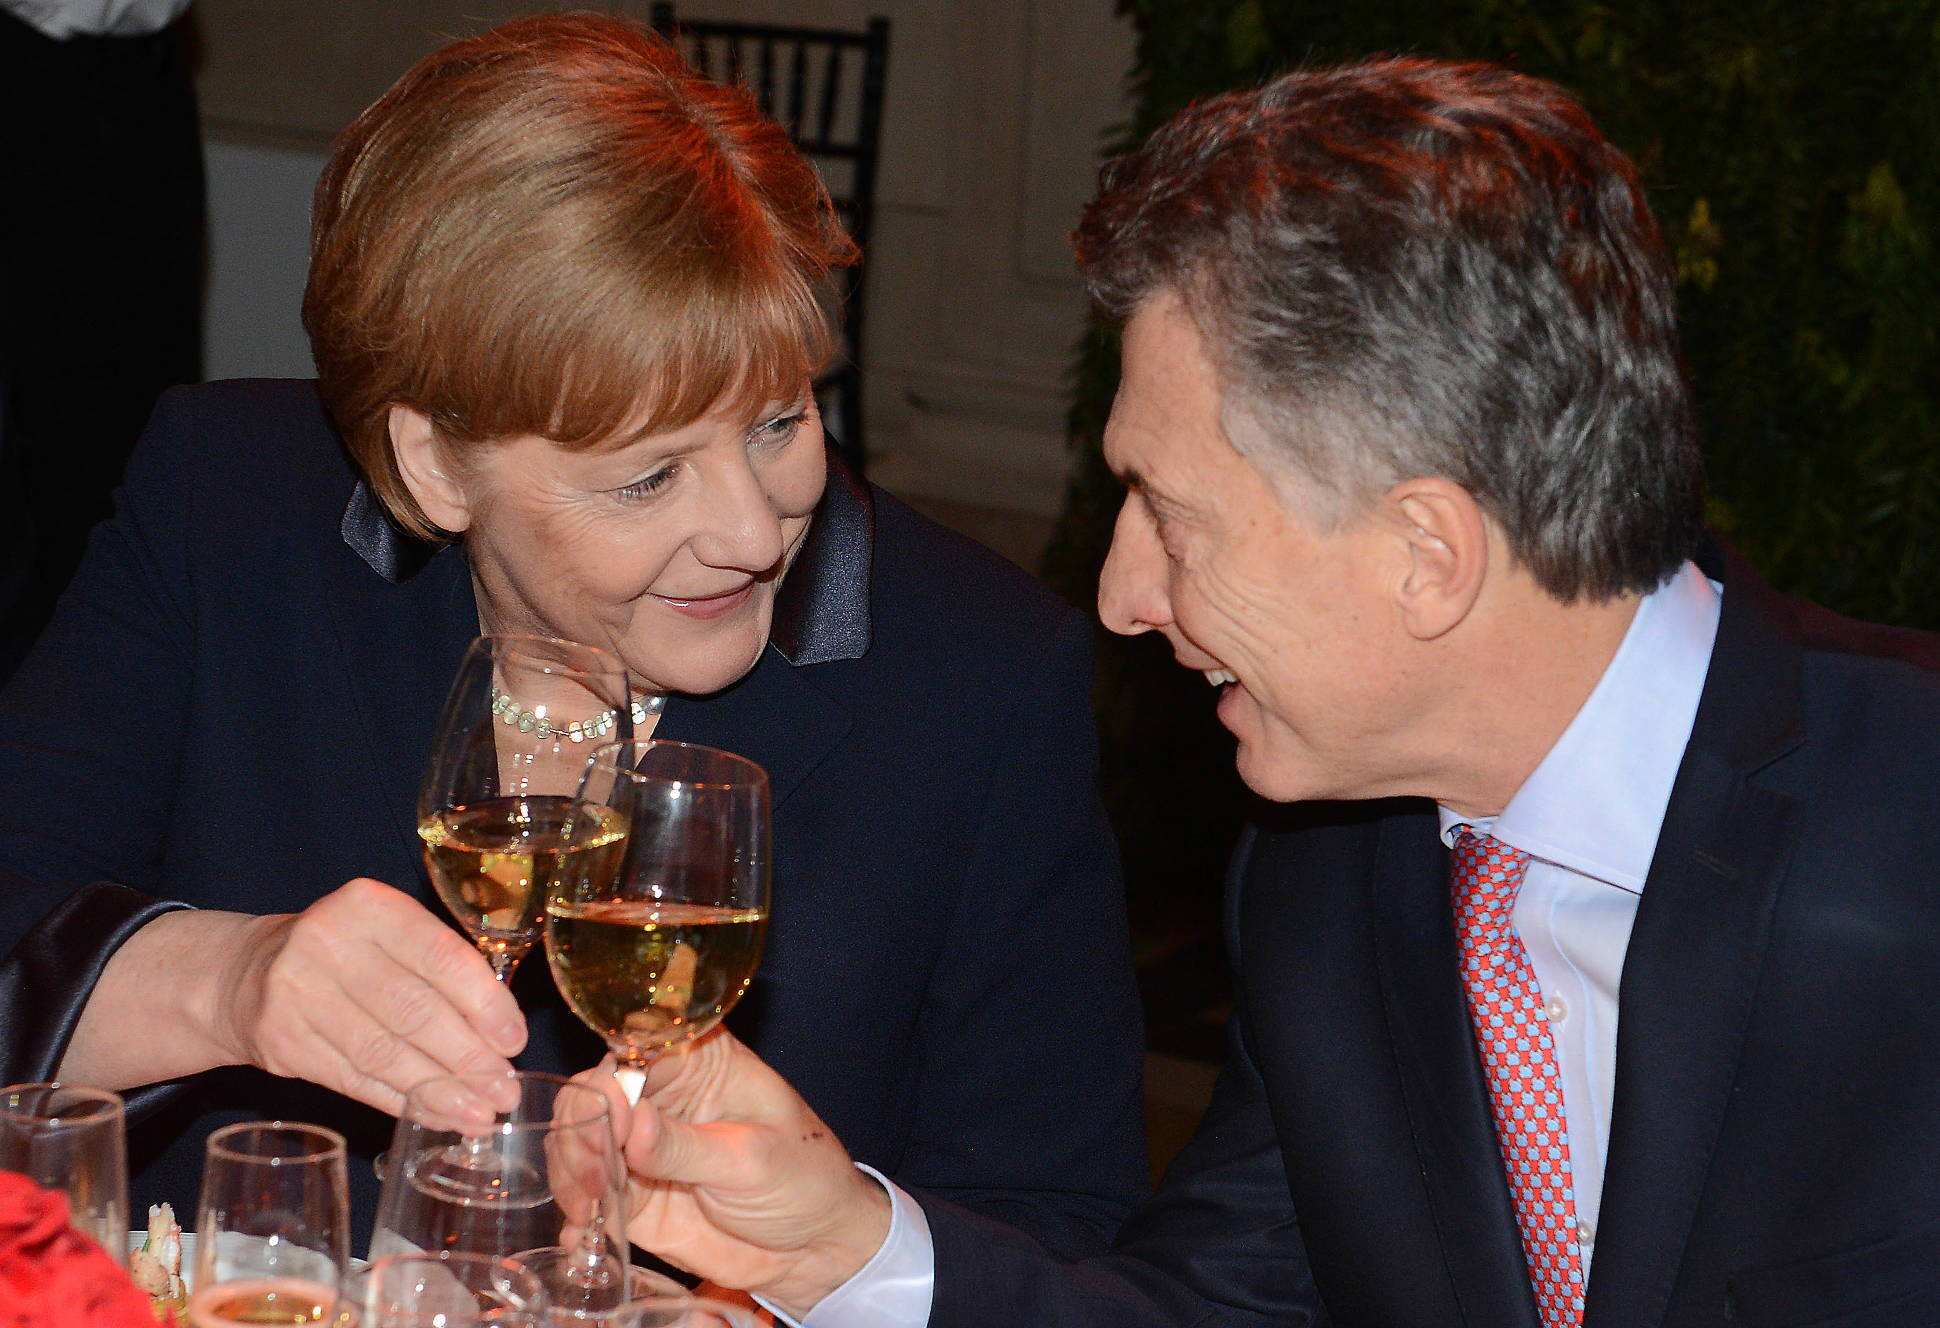 El Presidente ofreció una cena en honor de la canciller Merkel